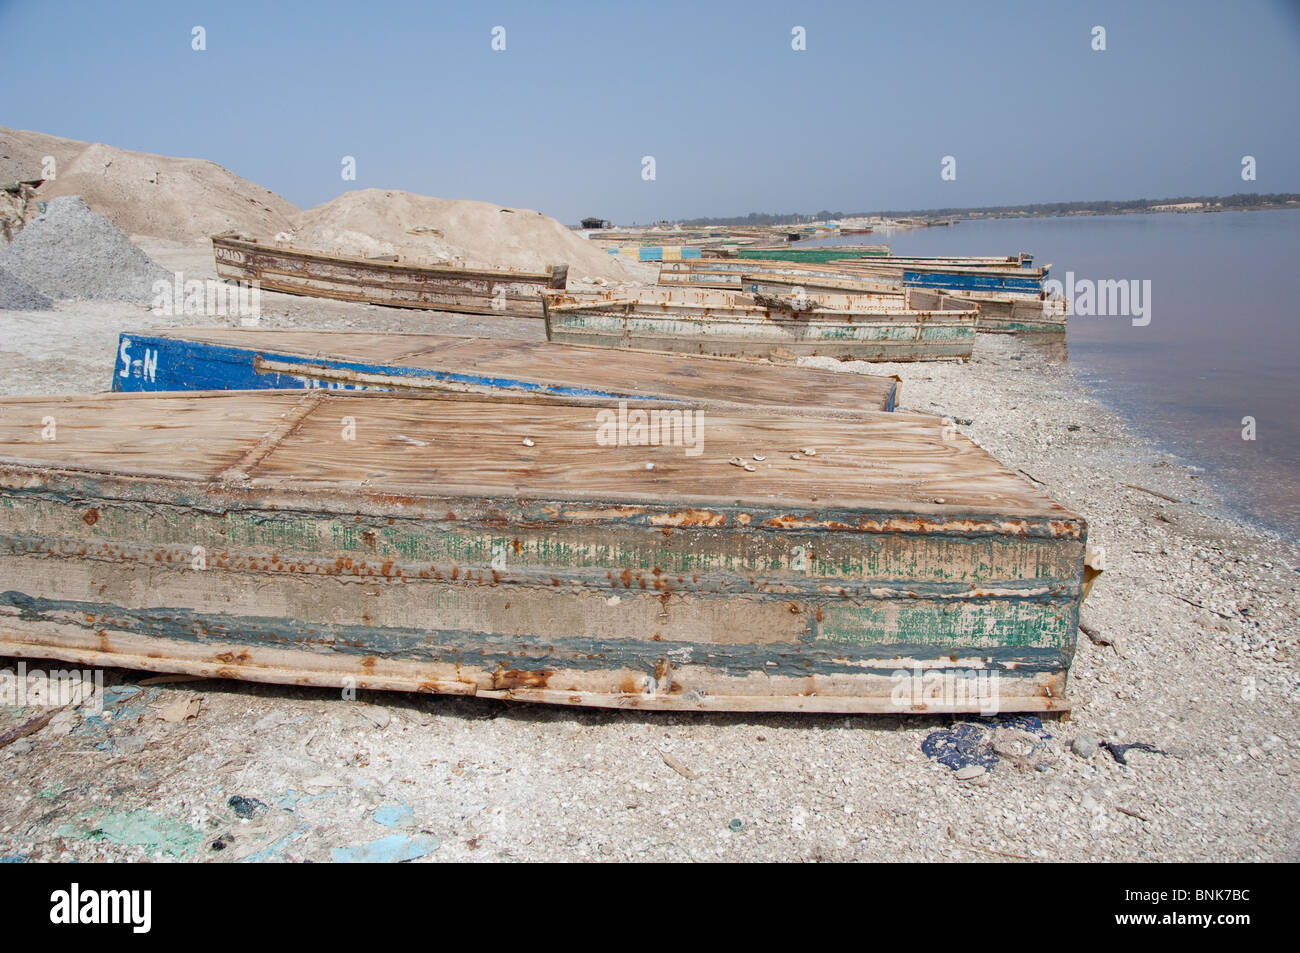 Afrique, Sénégal, Dakar. Le Lac Rose de Retba. La récolte de sel bateaux le long de la rive du lac saumâtre. Banque D'Images